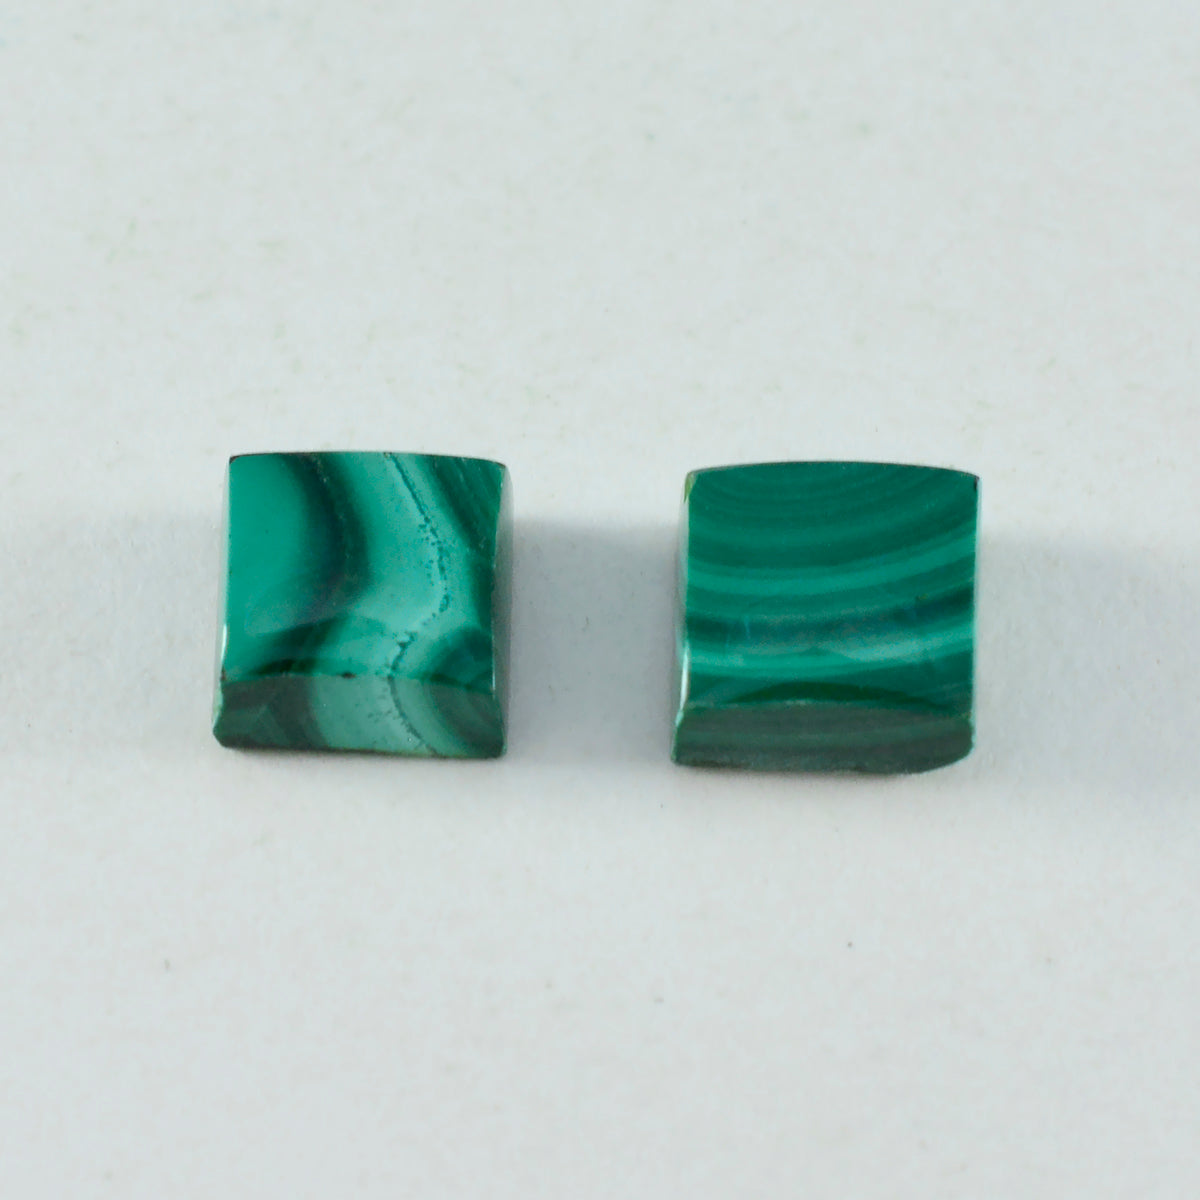 Riyogems 1PC Green Malachite Cabochon 15x15 mm Square Shape Good Quality Gems